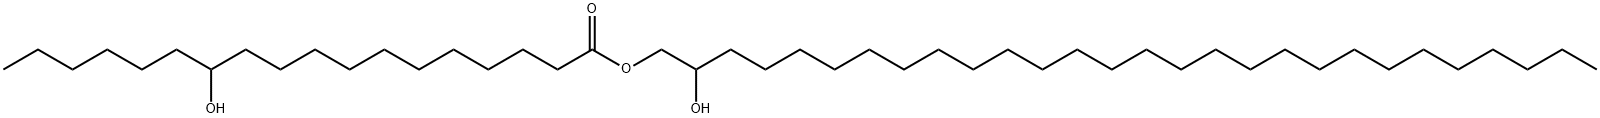 2-hydroxyoctacosyl 12-hydroxyoctadecanoate  Struktur